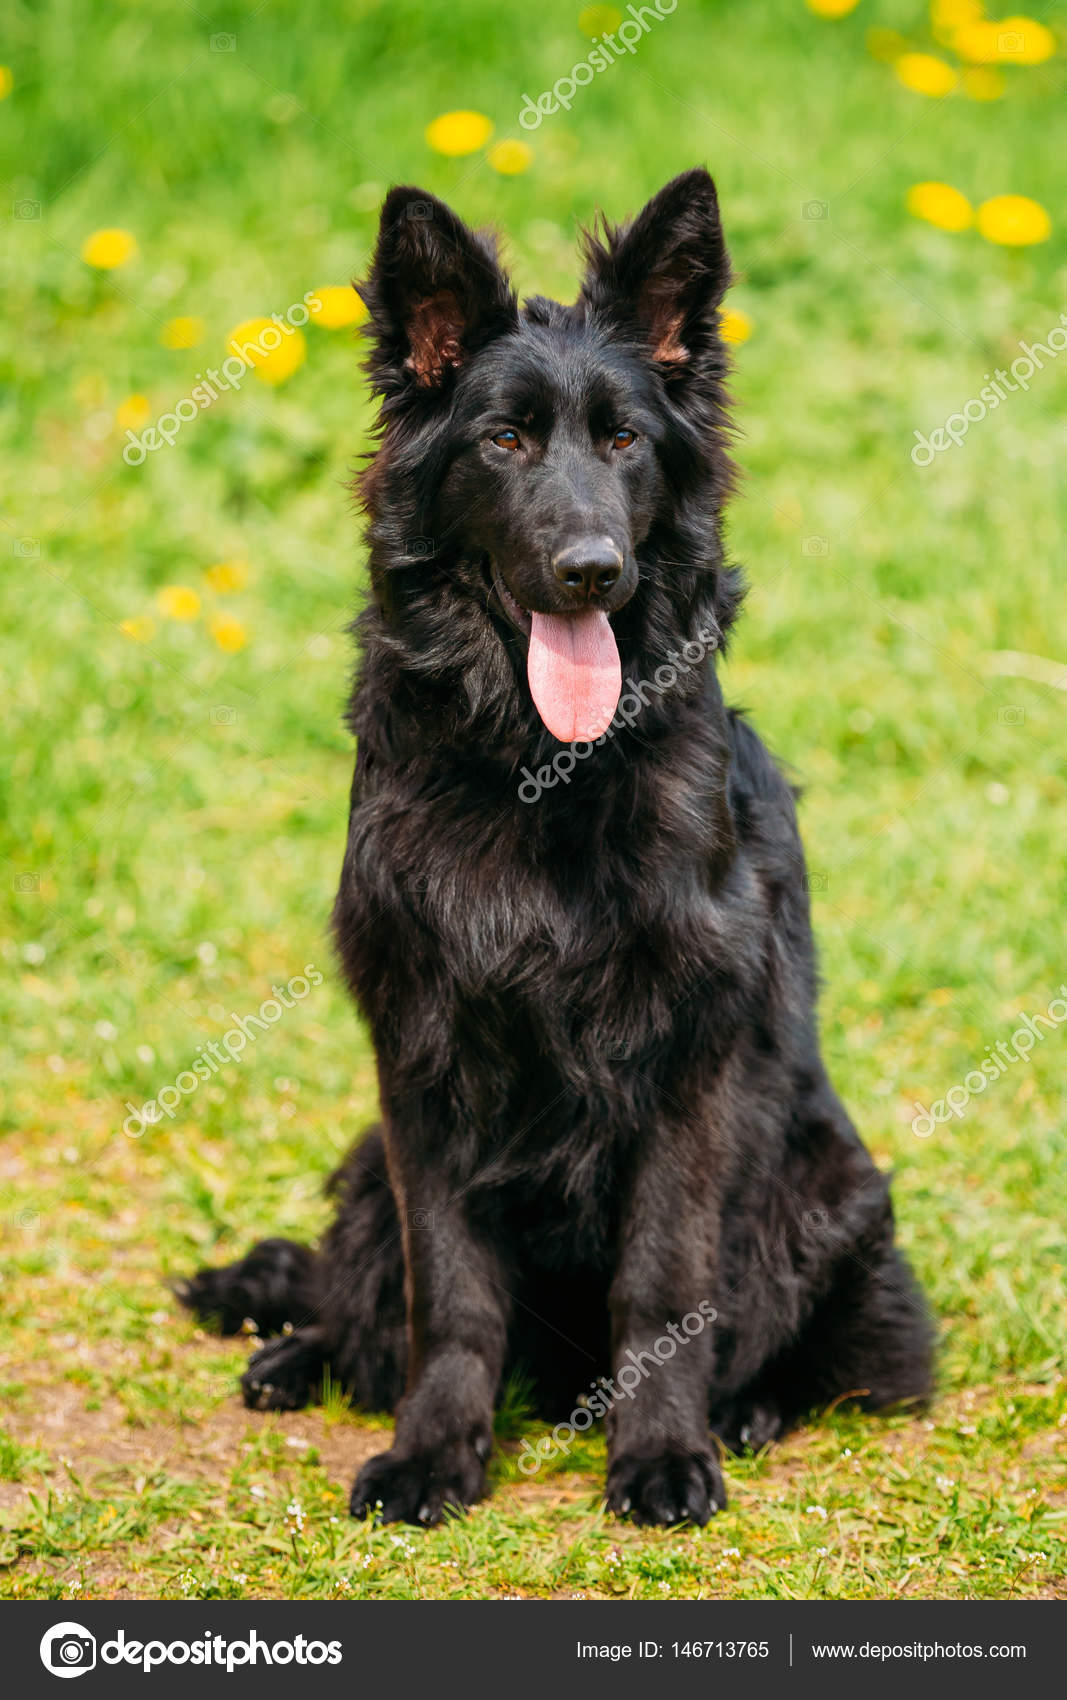 depositphotos_146713765-stock-photo-black-german-shepherd-dog-sit.jpg